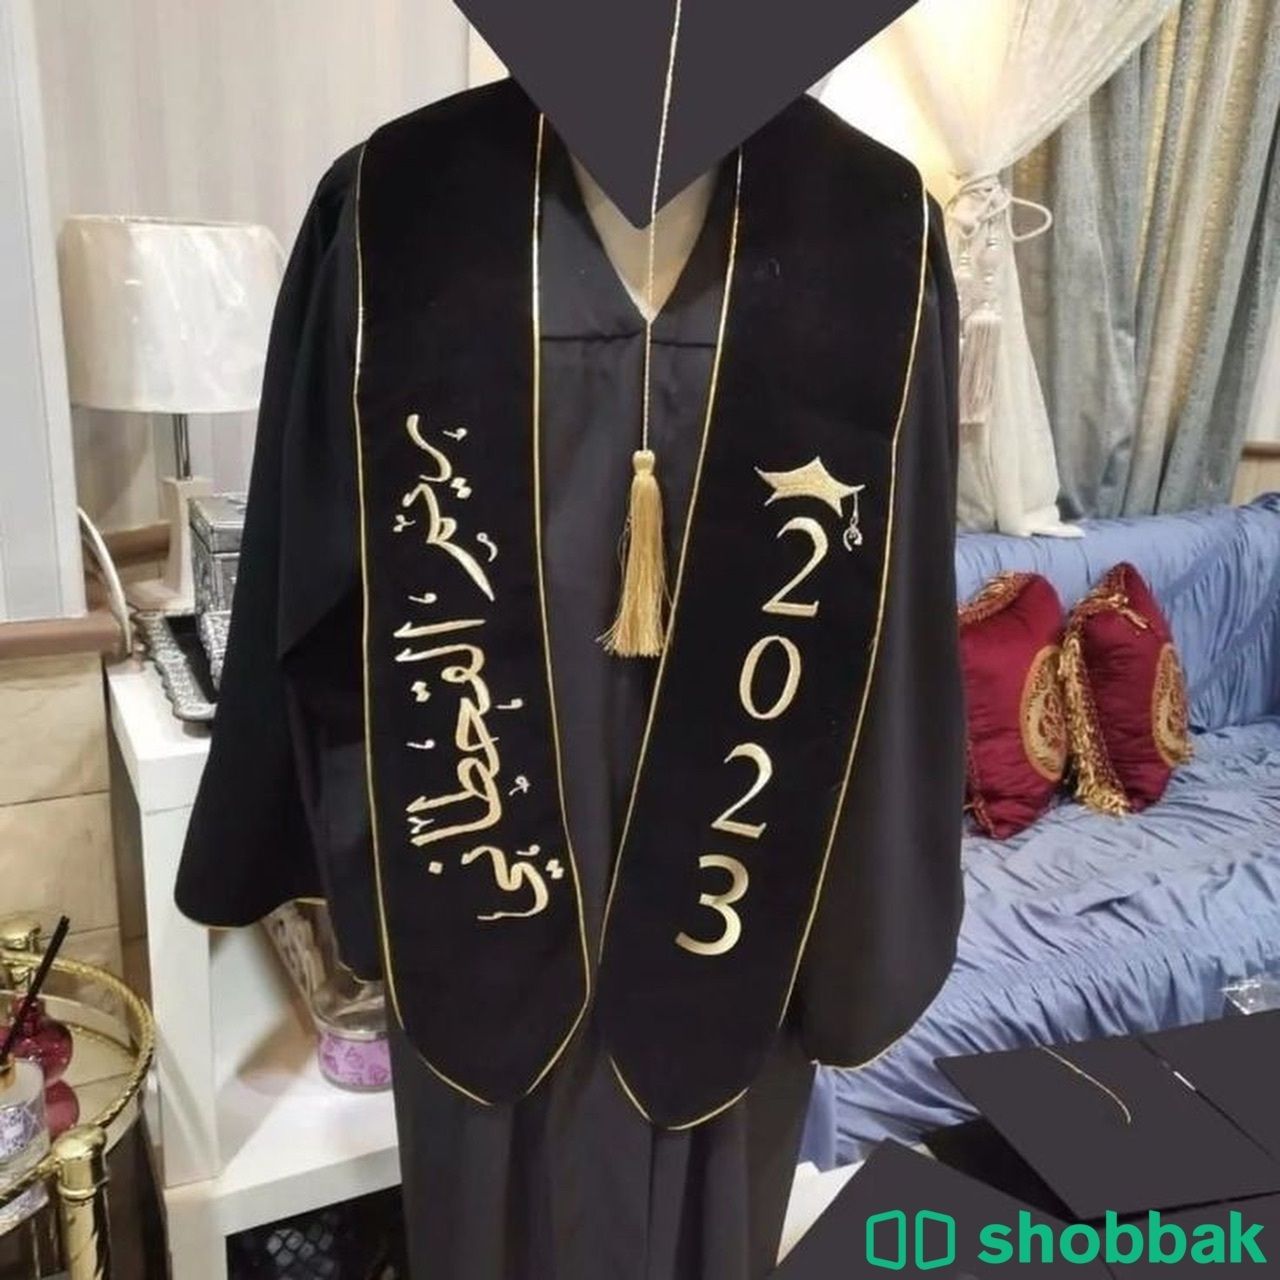 عبايات تخرج 🎓🎓🎓 Shobbak Saudi Arabia